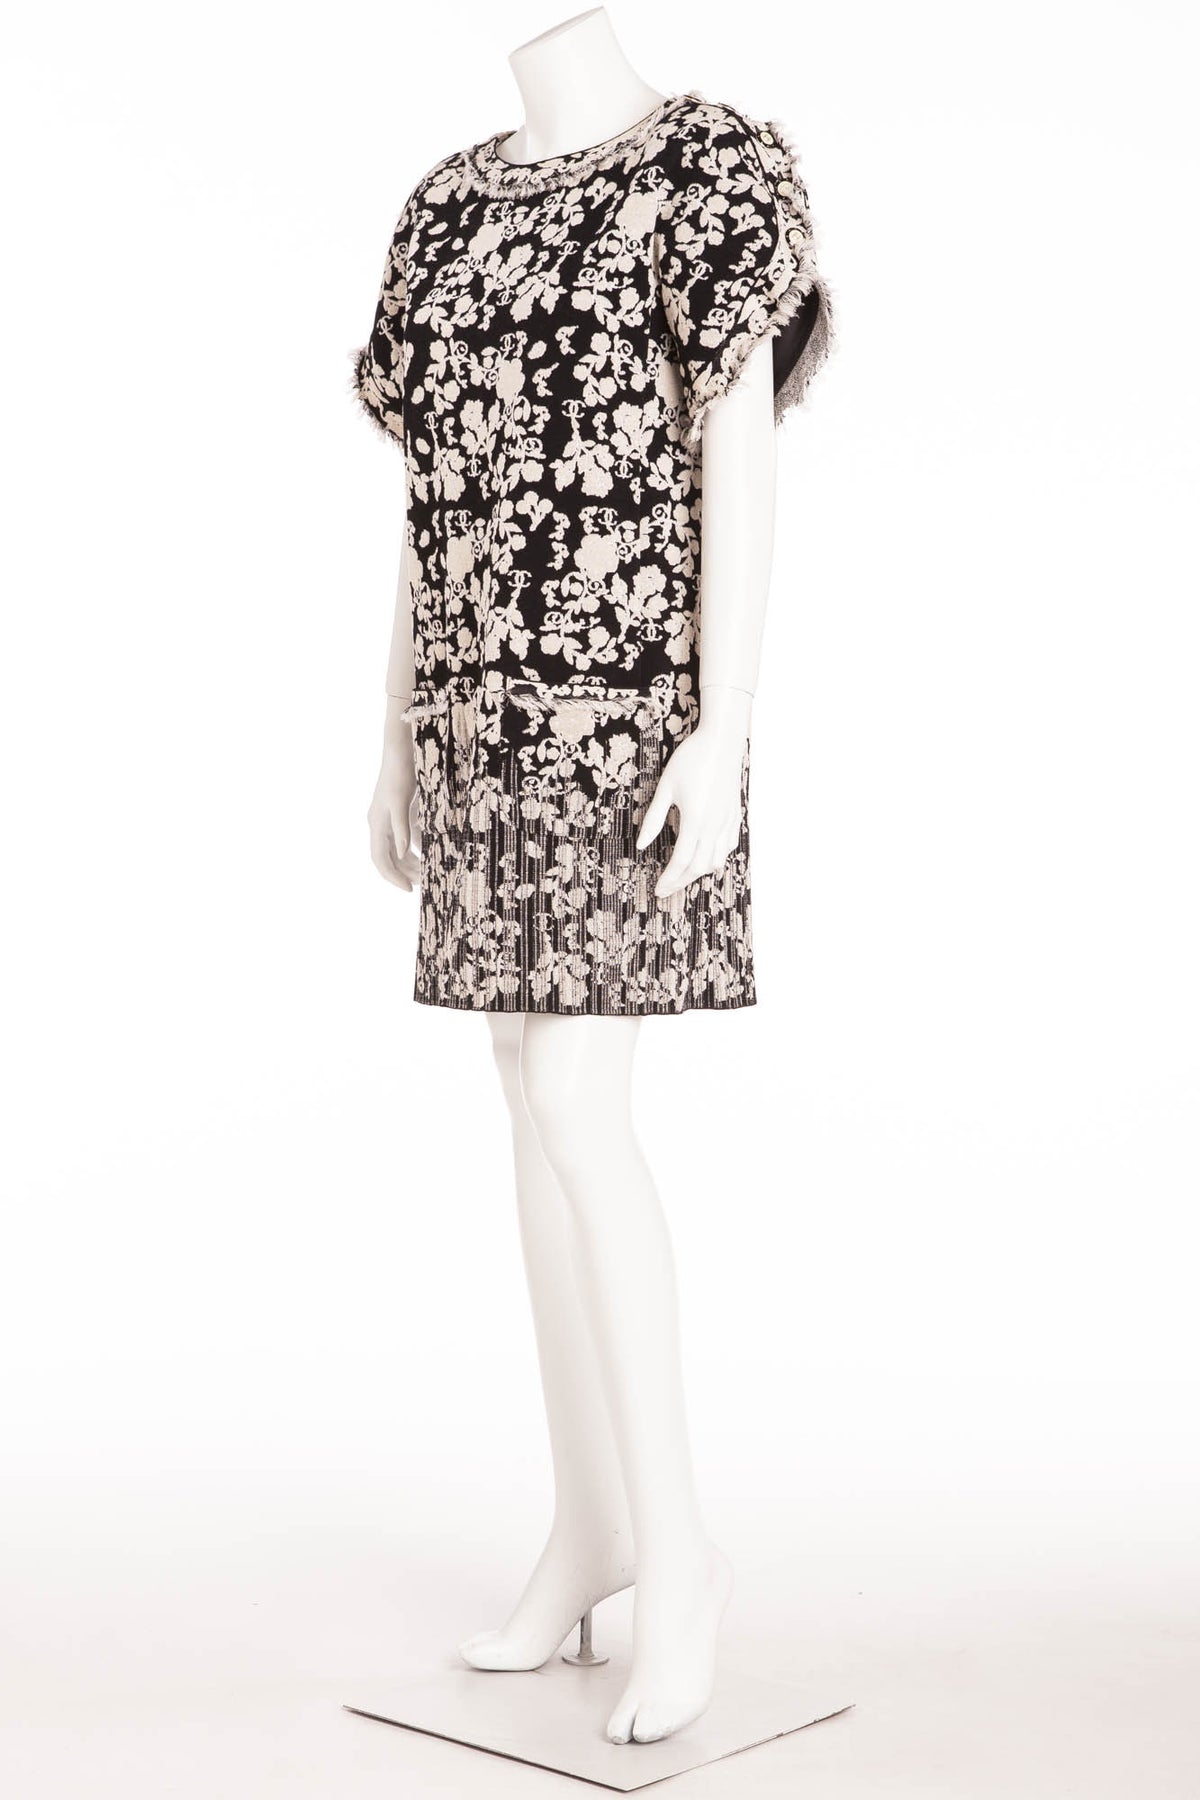 Chanel - White & Black Short Sleeve Floral Patterned Dress - FR 40